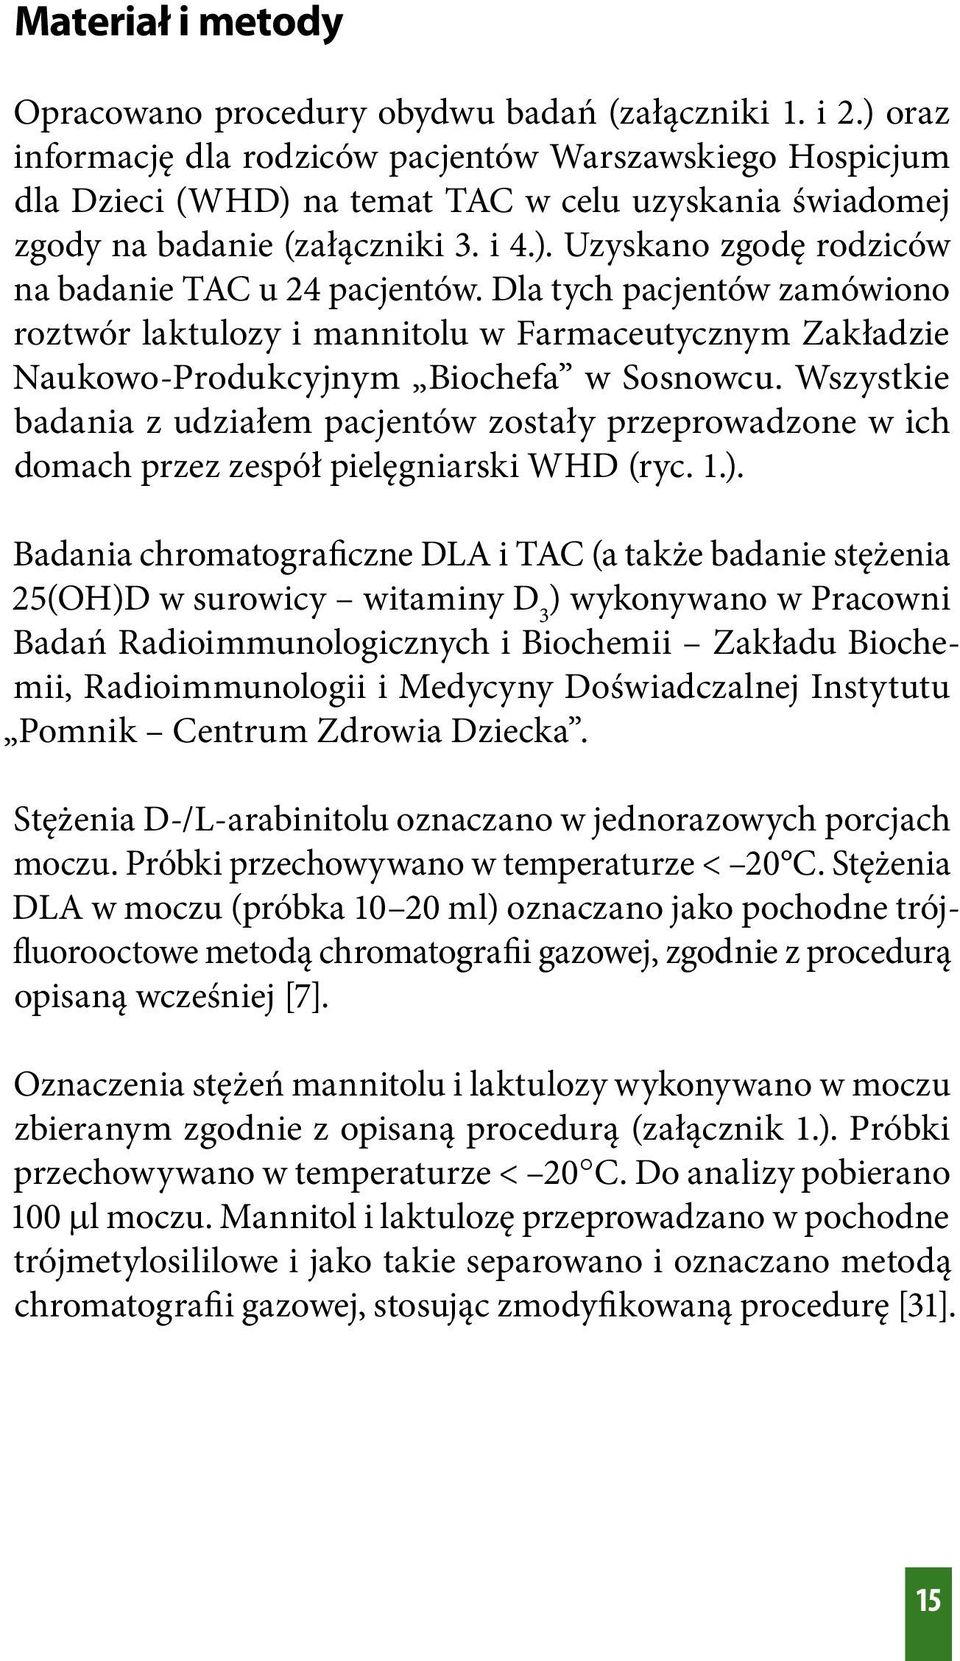 Dla tych pacjentów zamówiono roztwór laktulozy i mannitolu w Farmaceutycznym Zakładzie Naukowo-Produkcyjnym Biochefa w Sosnowcu.